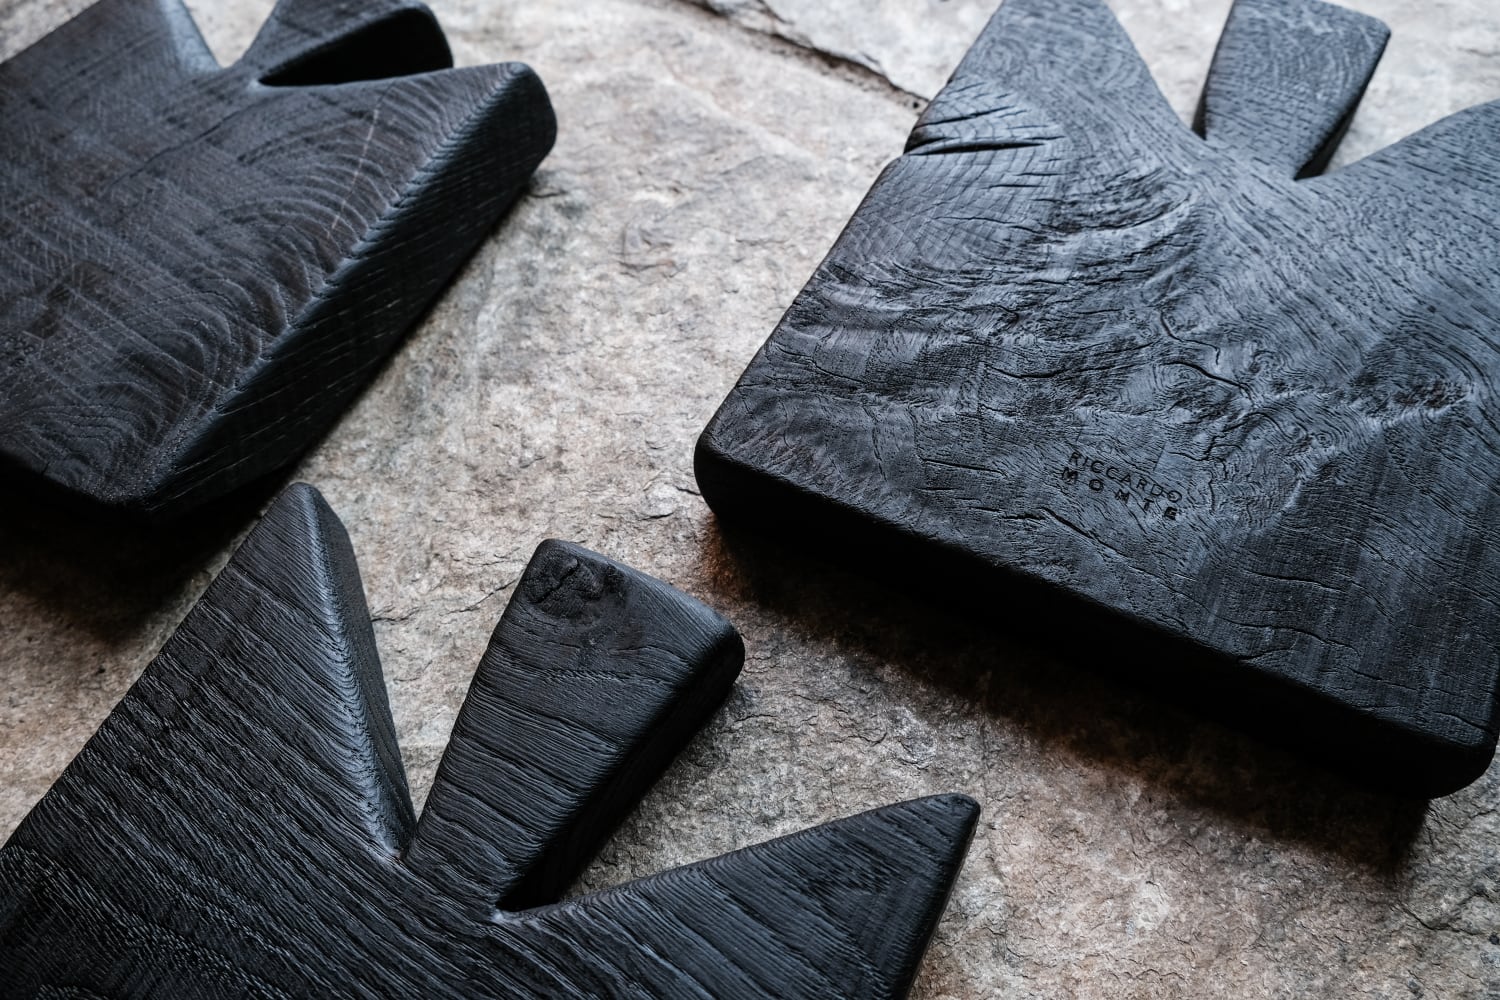 Taglieri in legno fatti a mano da Riccardo Monte trattati con la tecnica della carbonizzazione | ©foto Katie May